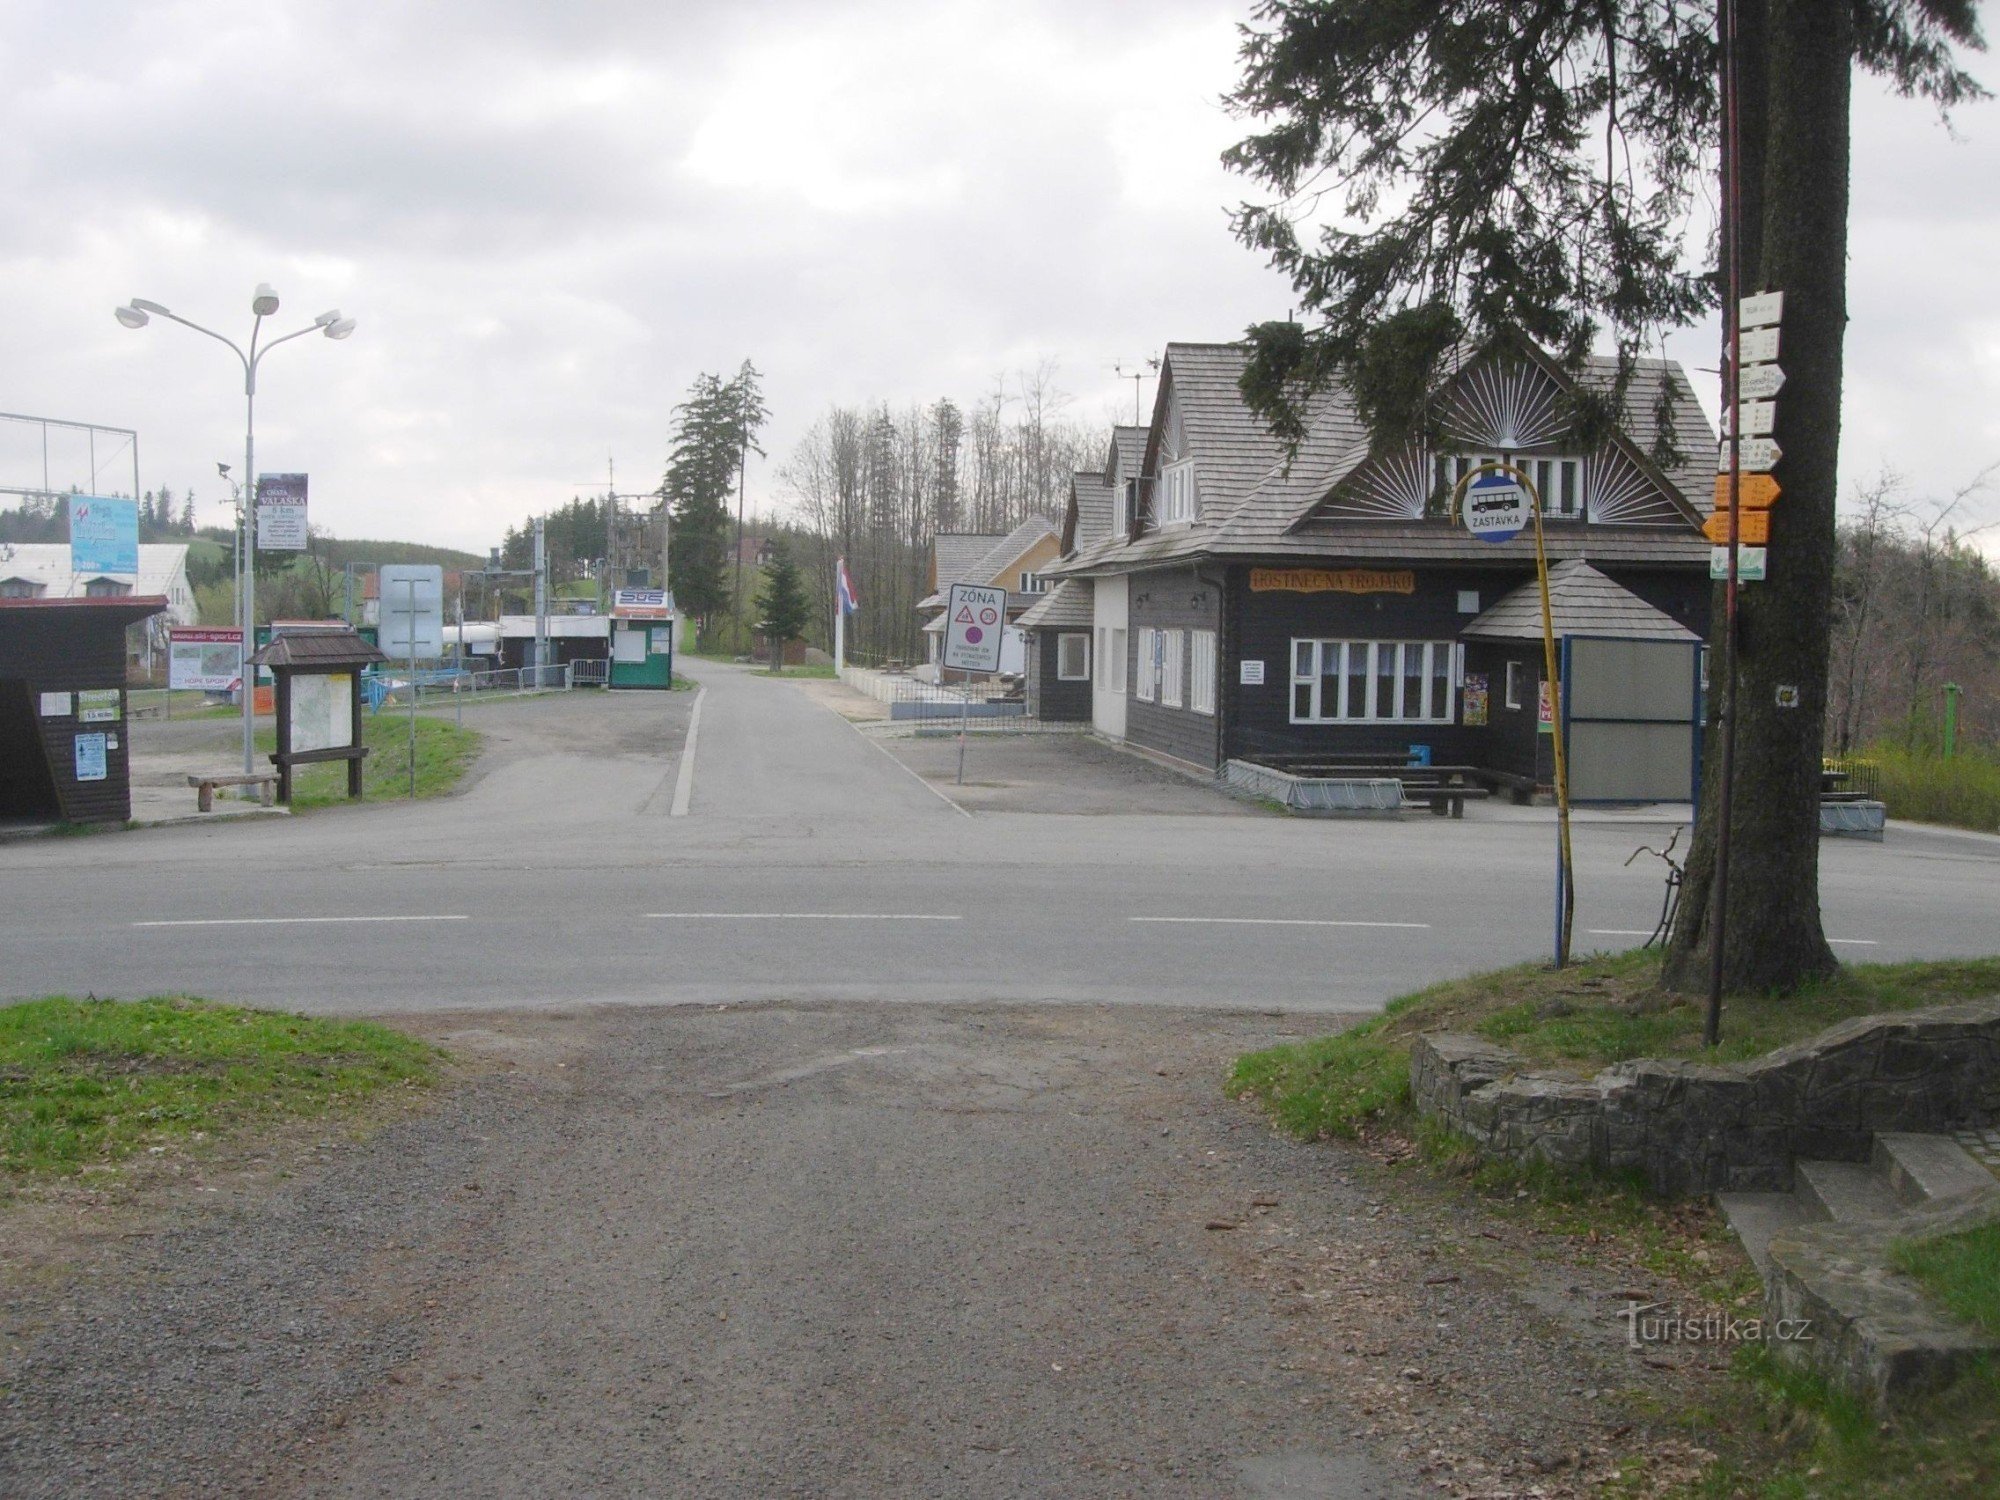 Skrzyżowanie trójstronne z karczmą, przystankiem autobusowym, ośrodkiem narciarskim i drogowskazem